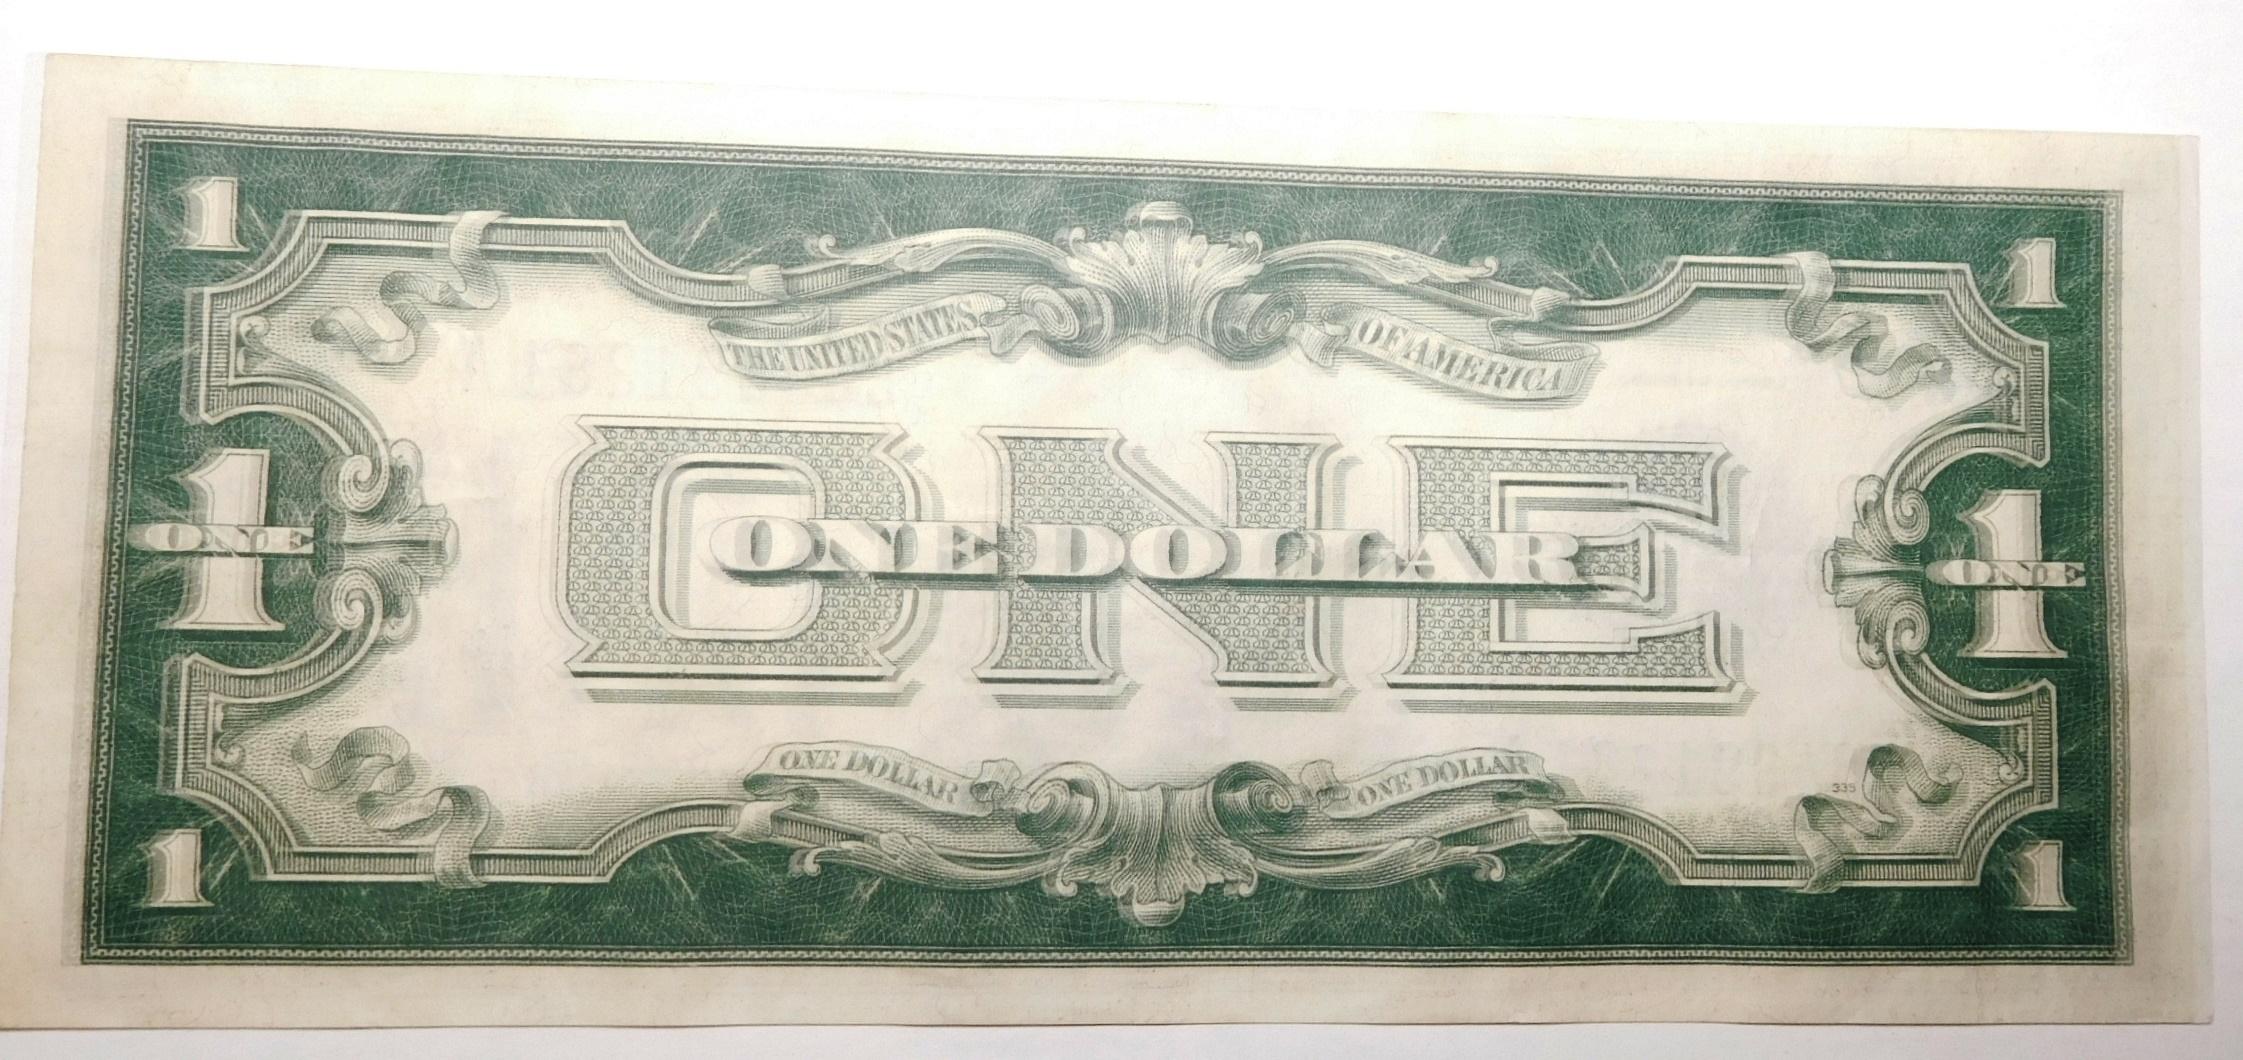 1928 $1.00 SILVER CERTIFICATE CHOICE AU